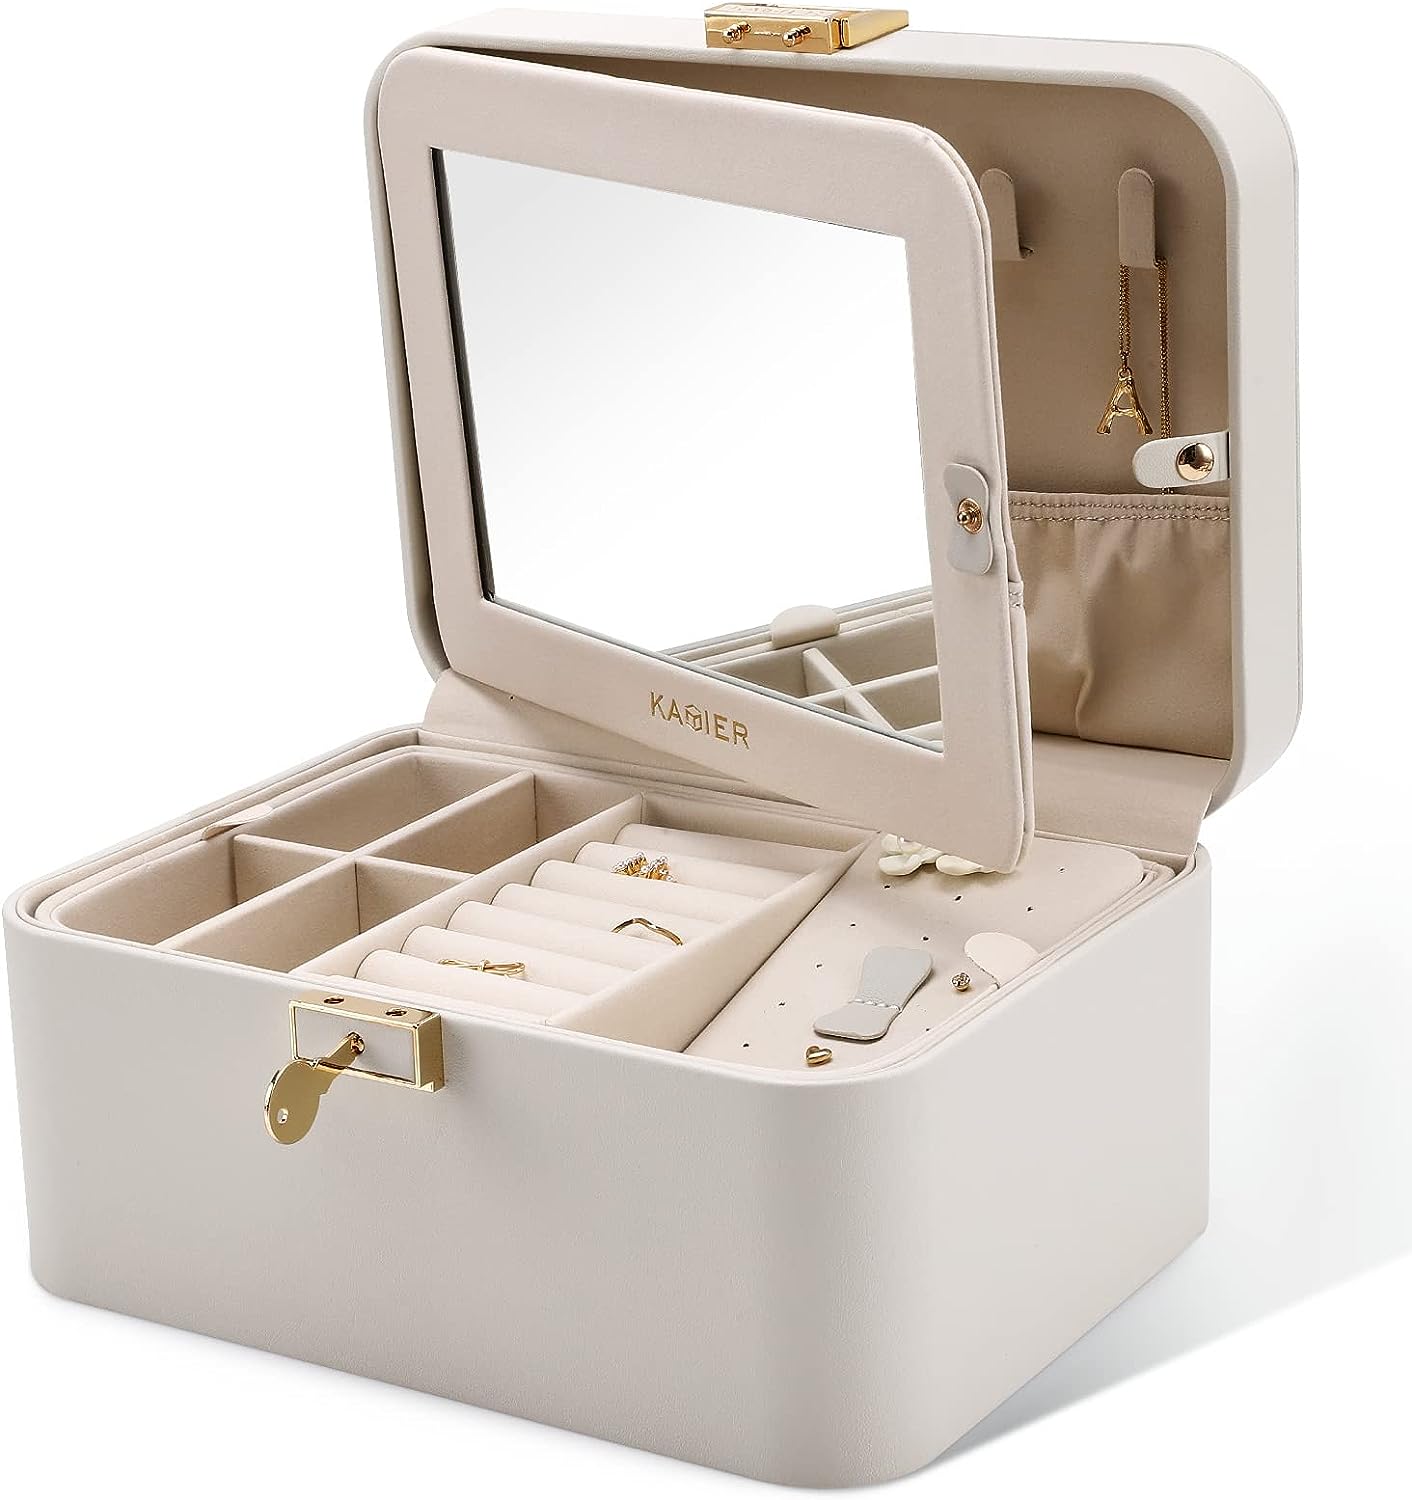 KAMIER Jewelry Safe Box